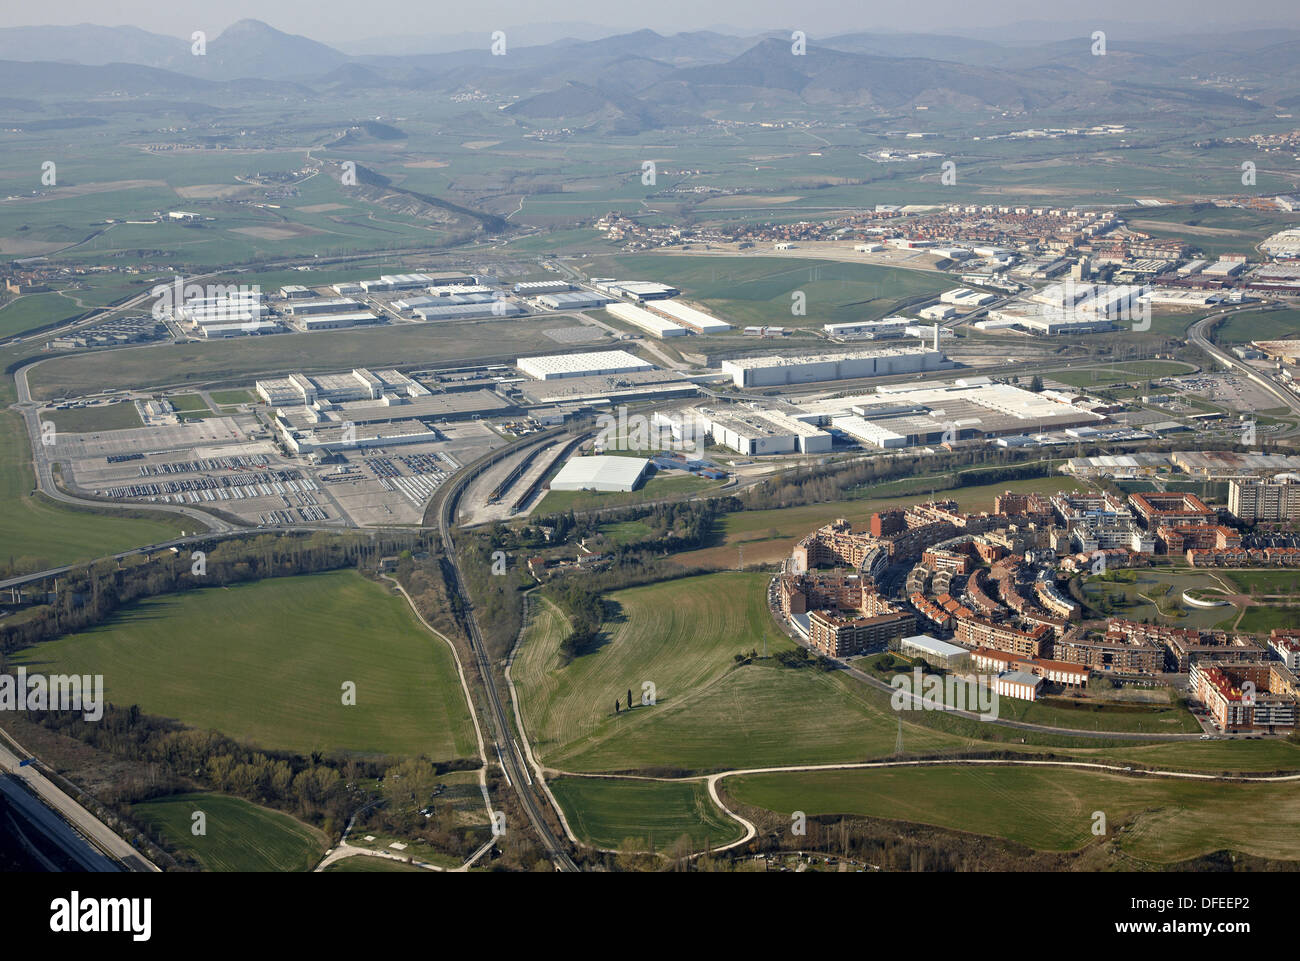 Volkswagen, Landaben industrial area, Pamplona, Navarre, Spain Stock Photo